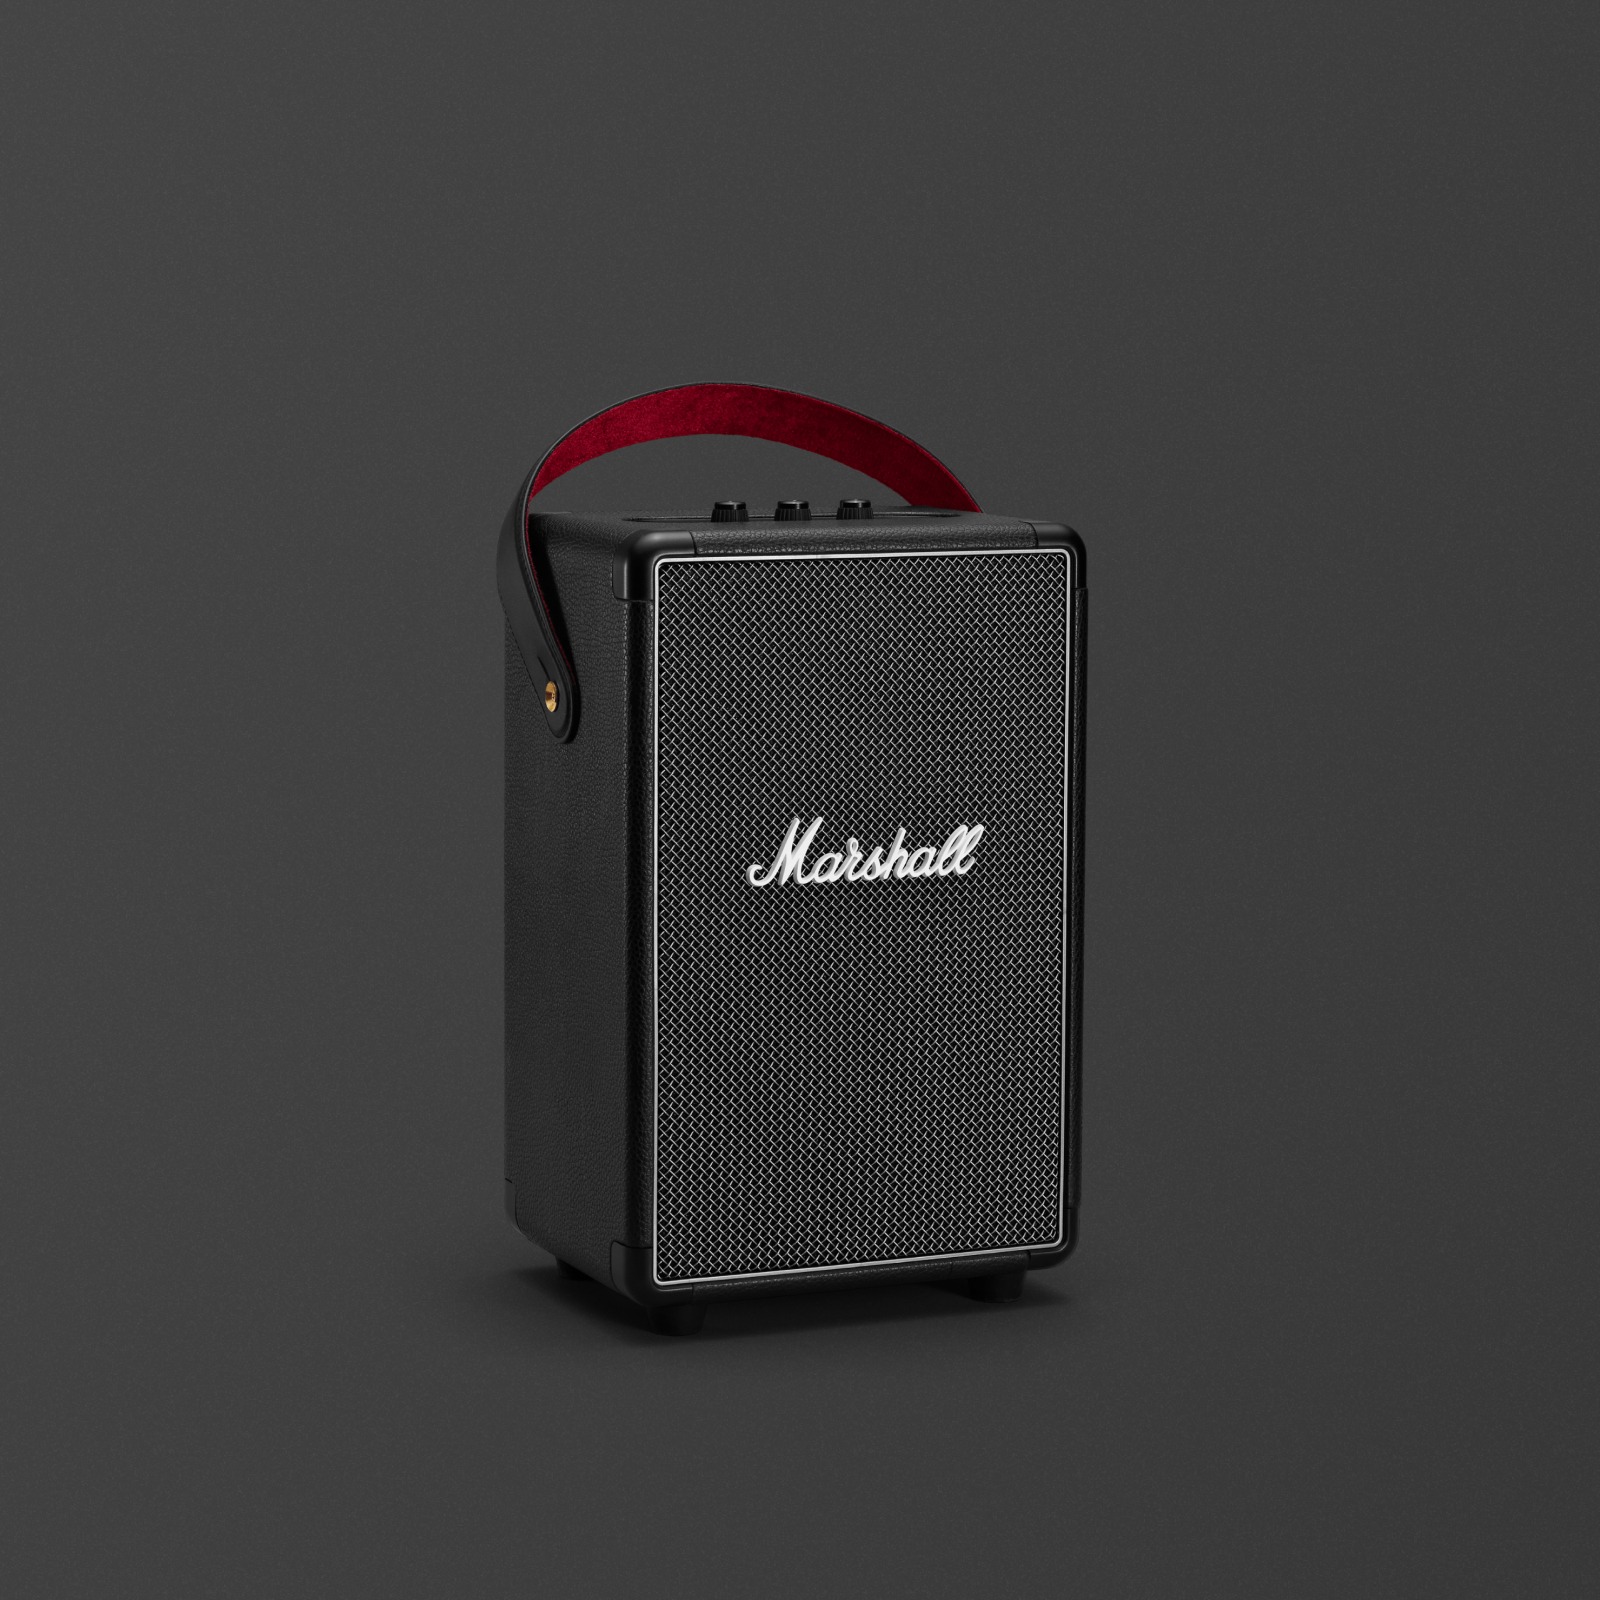 Der Marshall TUFTON BLACK ist ein eleganter und kompakter schwarzer Lautsprecher, der einen kraftvollen und klaren Sound liefert.